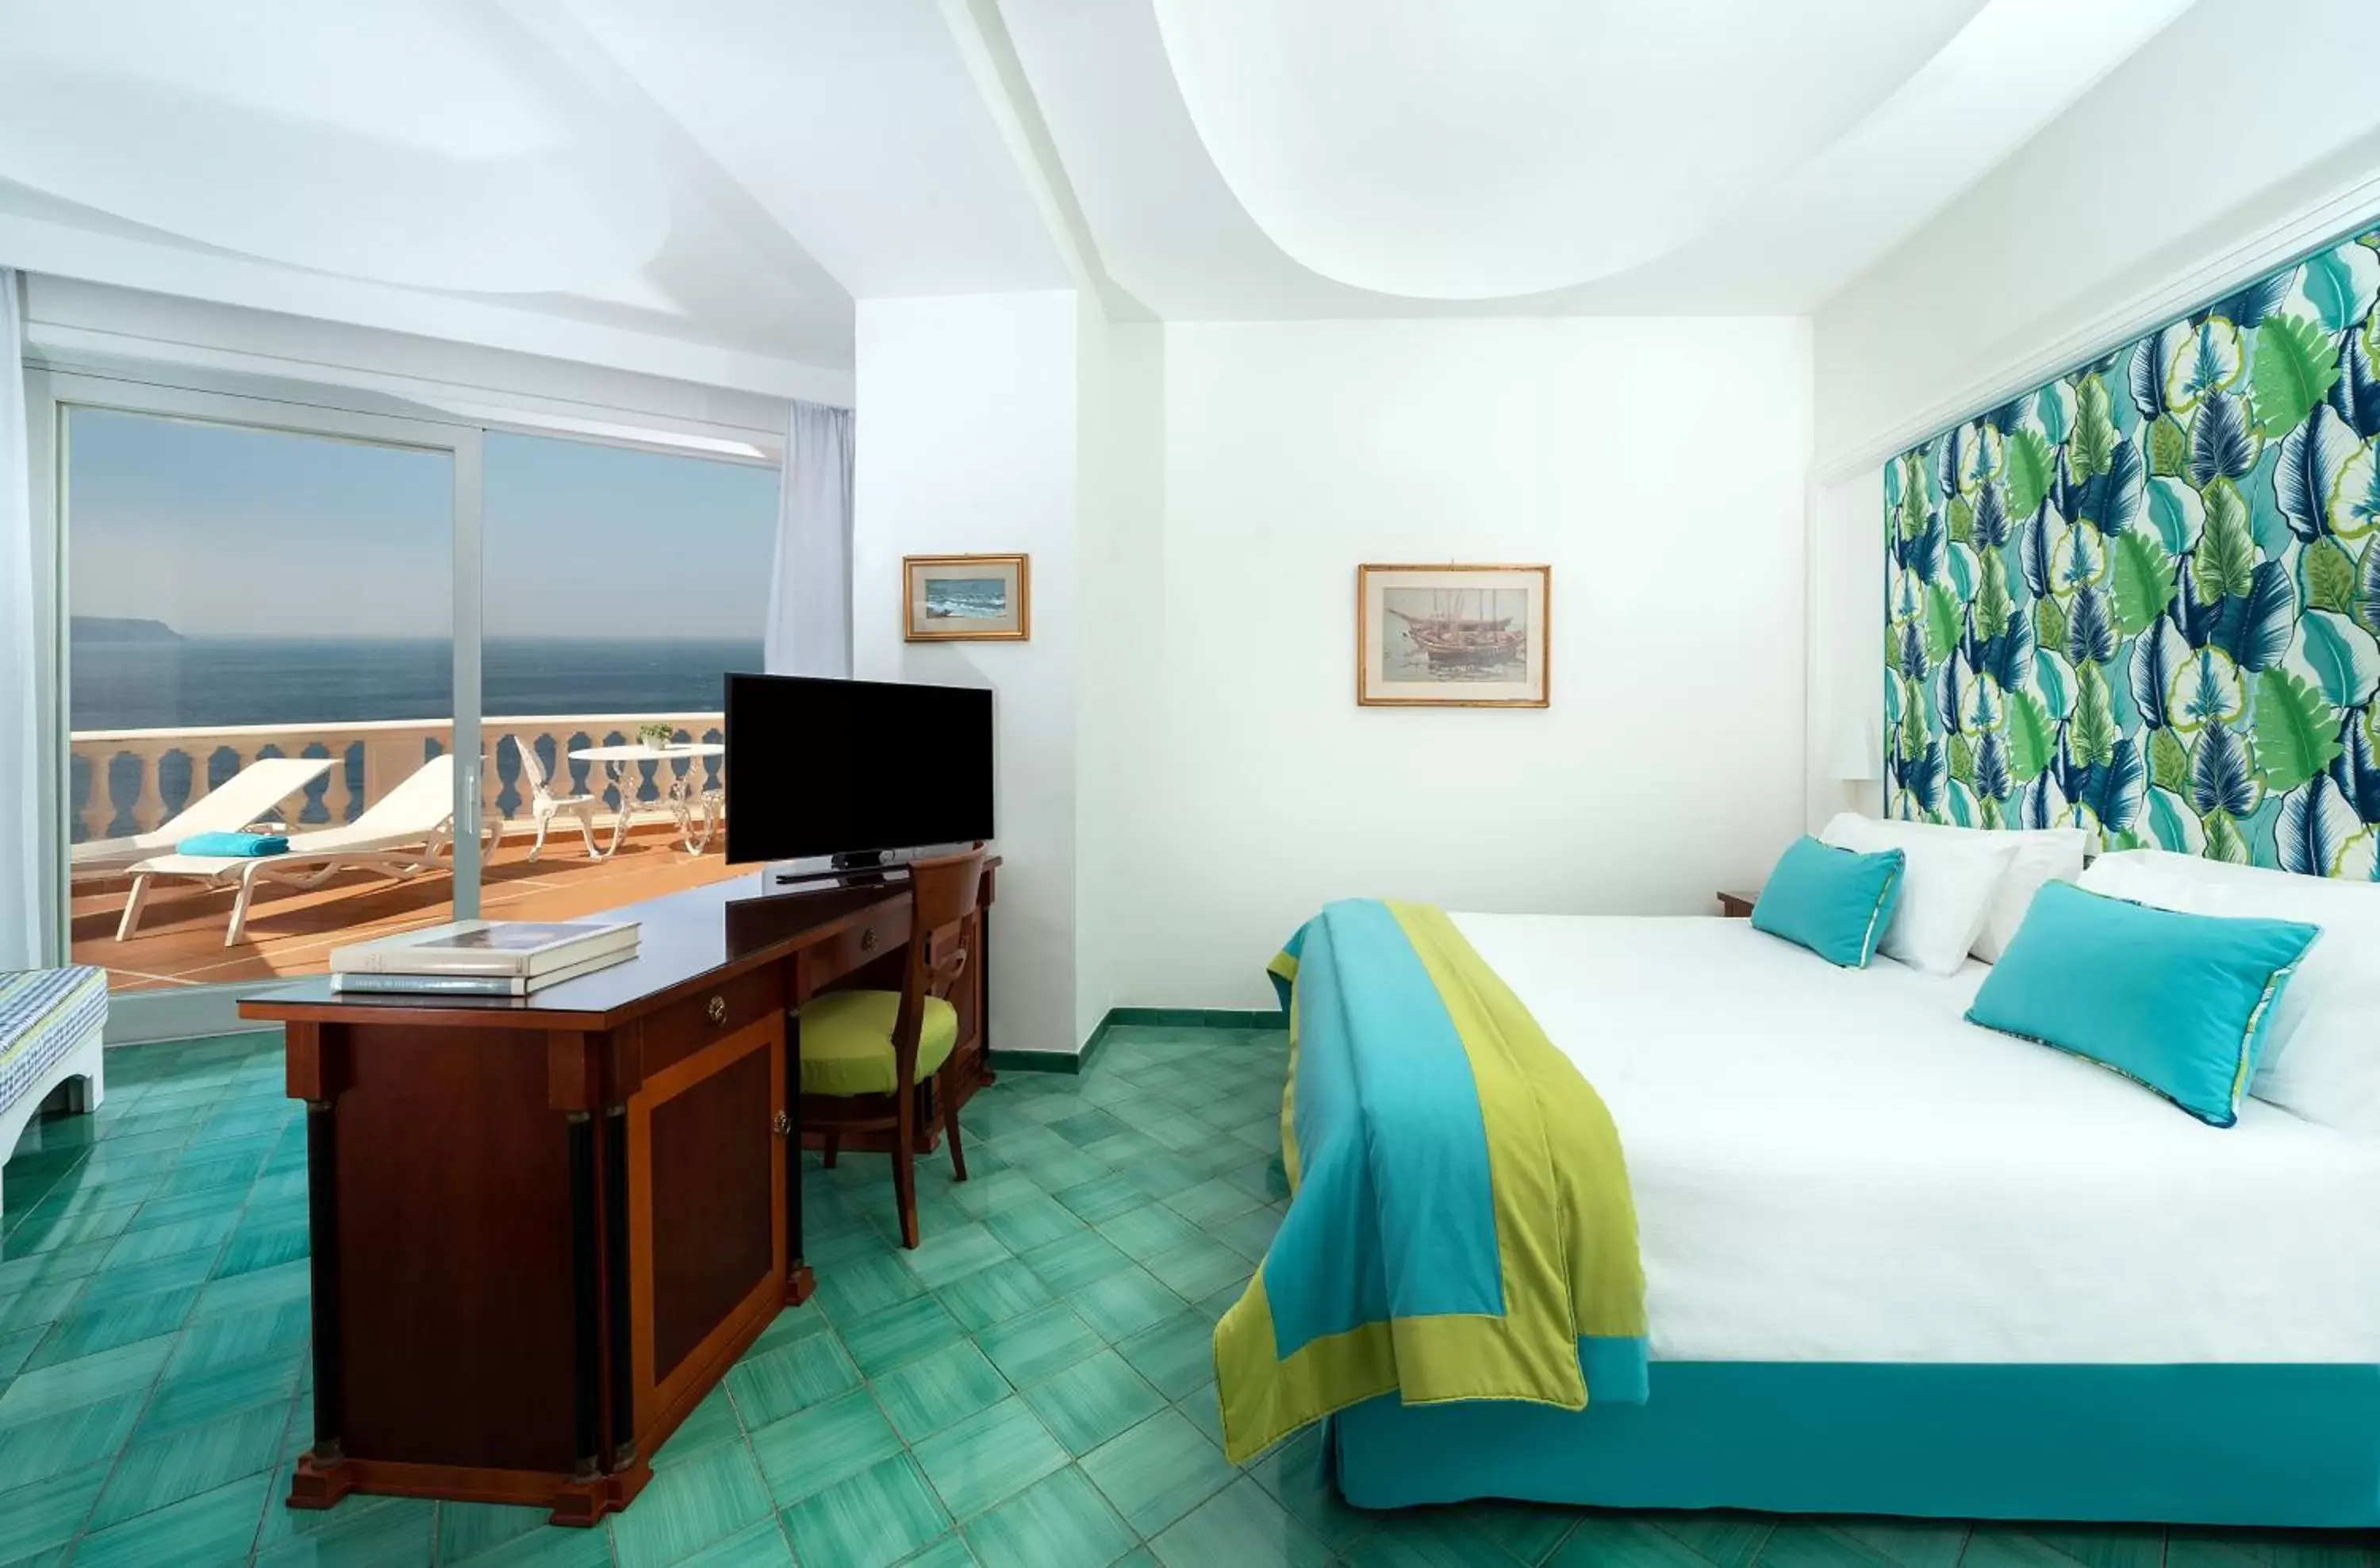 Photo of the whole room in Hotel & Spa Bellavista Francischiello